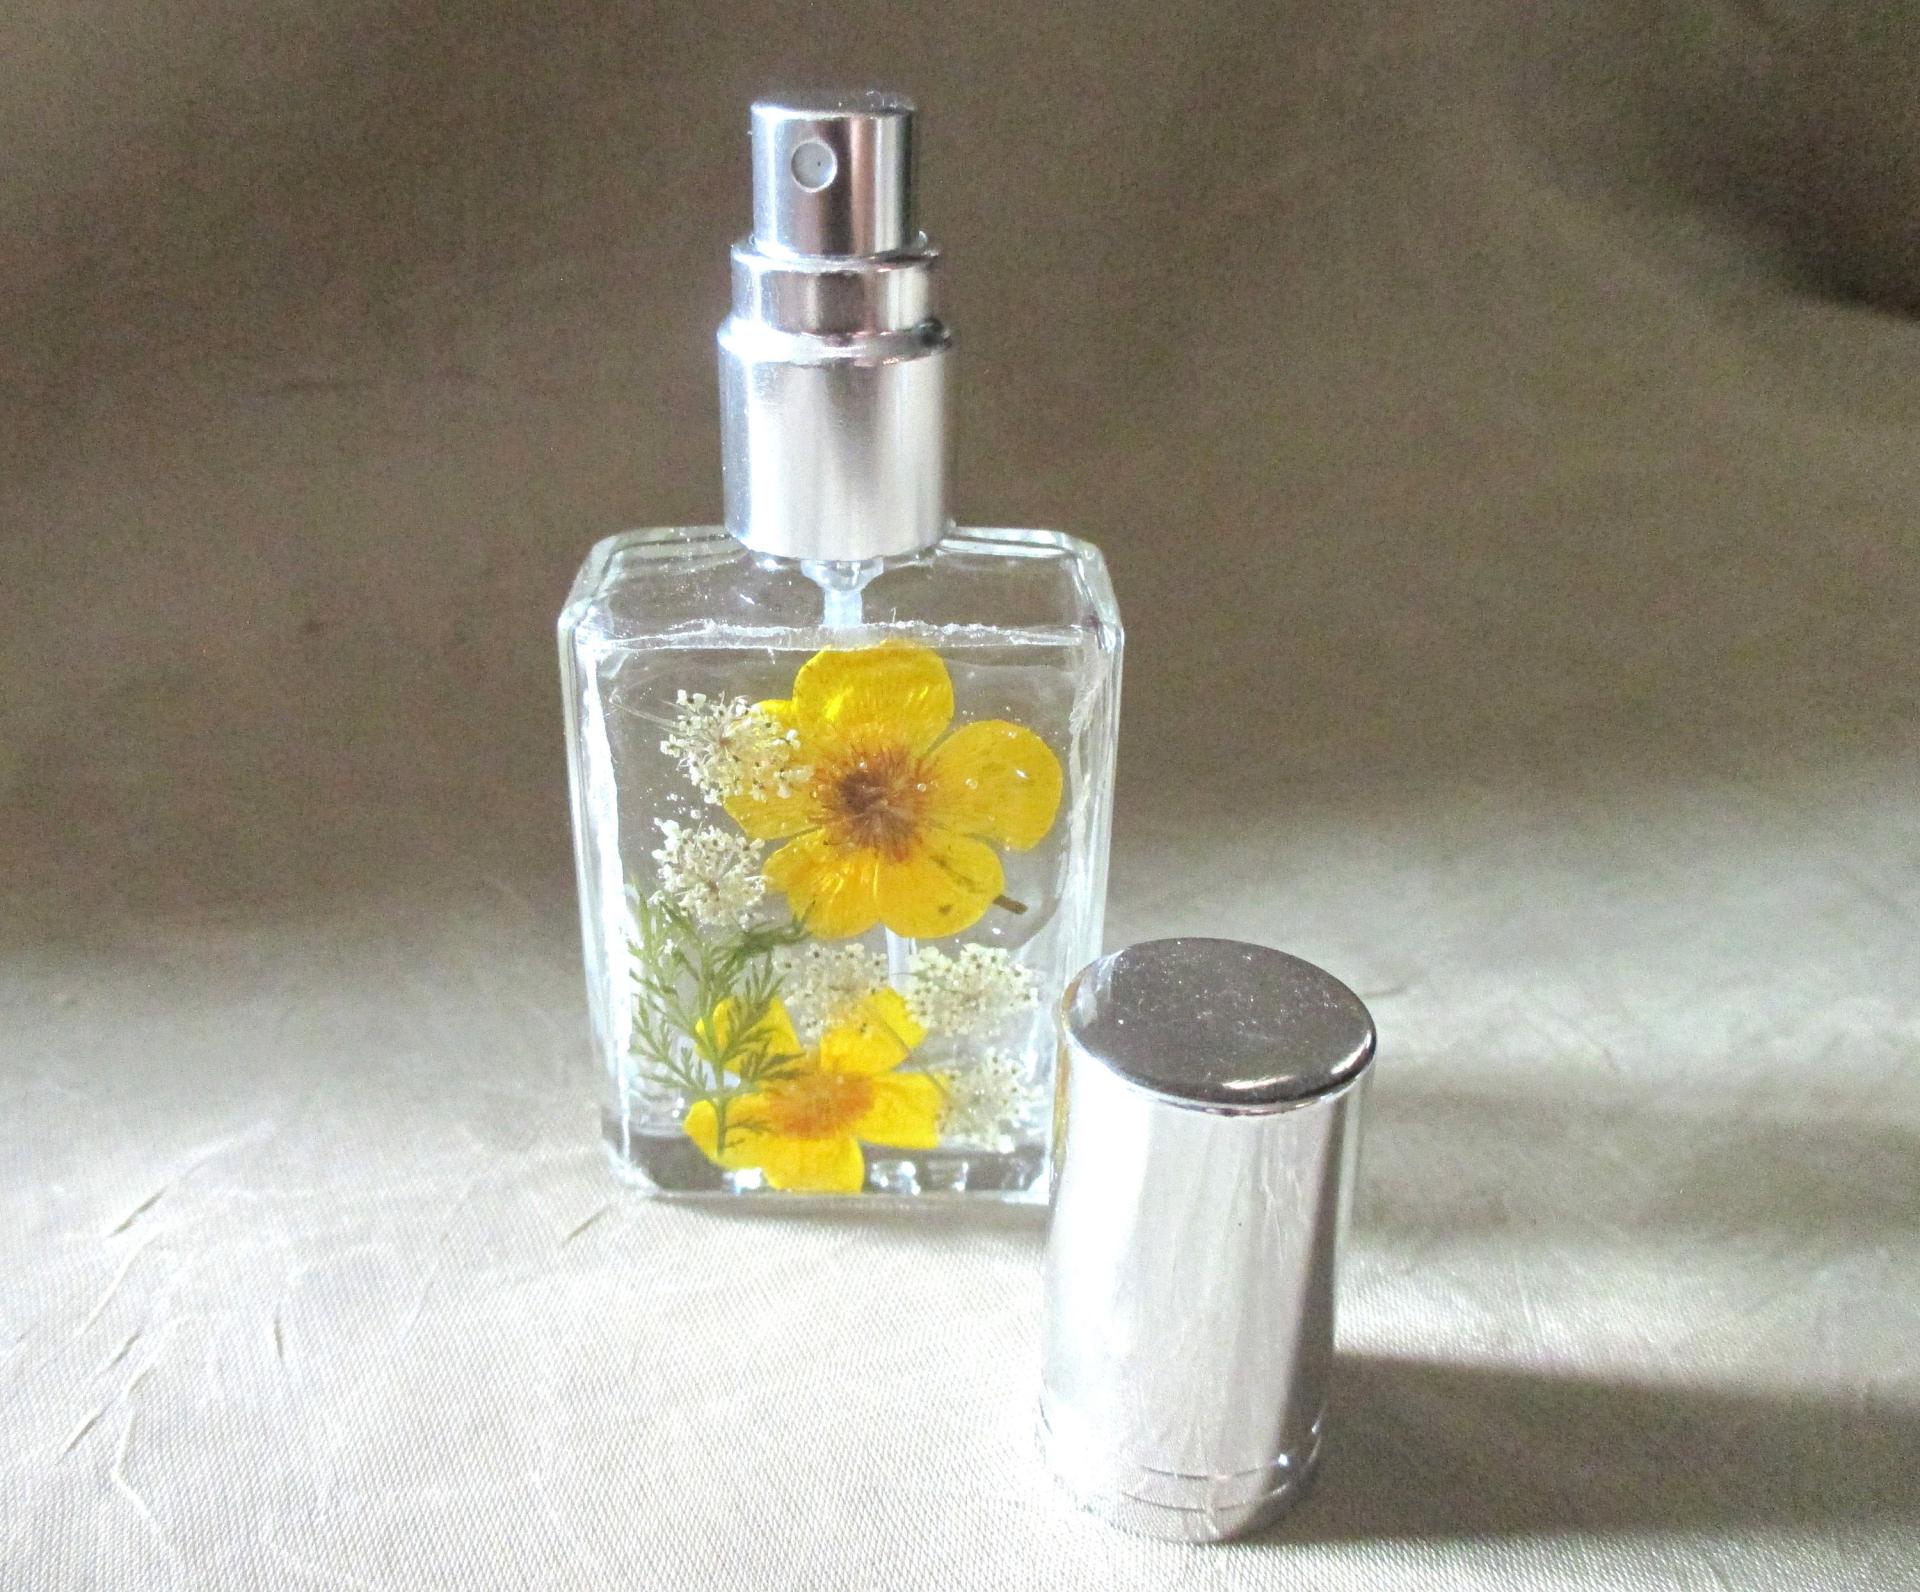 Floral Perfume Bottles, Spray Mister, Square Bottles, Flowers in Resin